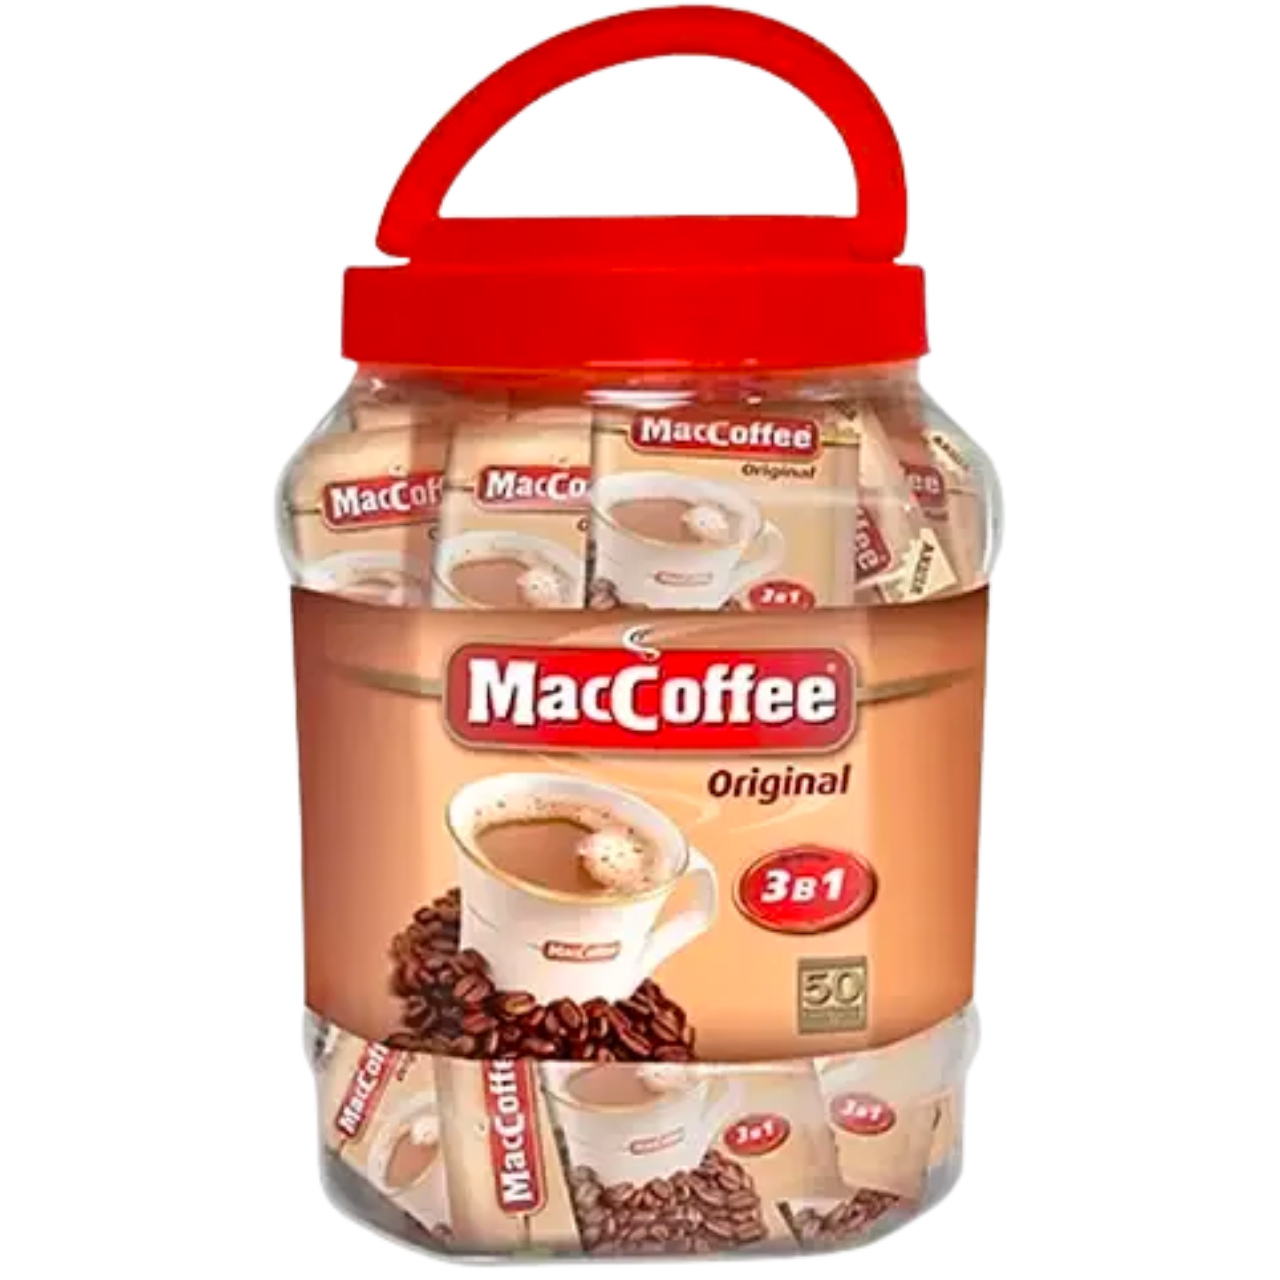 В каждой 25 банке кофе есть приз. Маккоффе оригинал 3в1, , шт. Маккофе 3в1 20г 1/ 50. Маккофе 3в1 кофе 1*50шт (шт.). Кофе 3 в 1 Маккофе в банке.